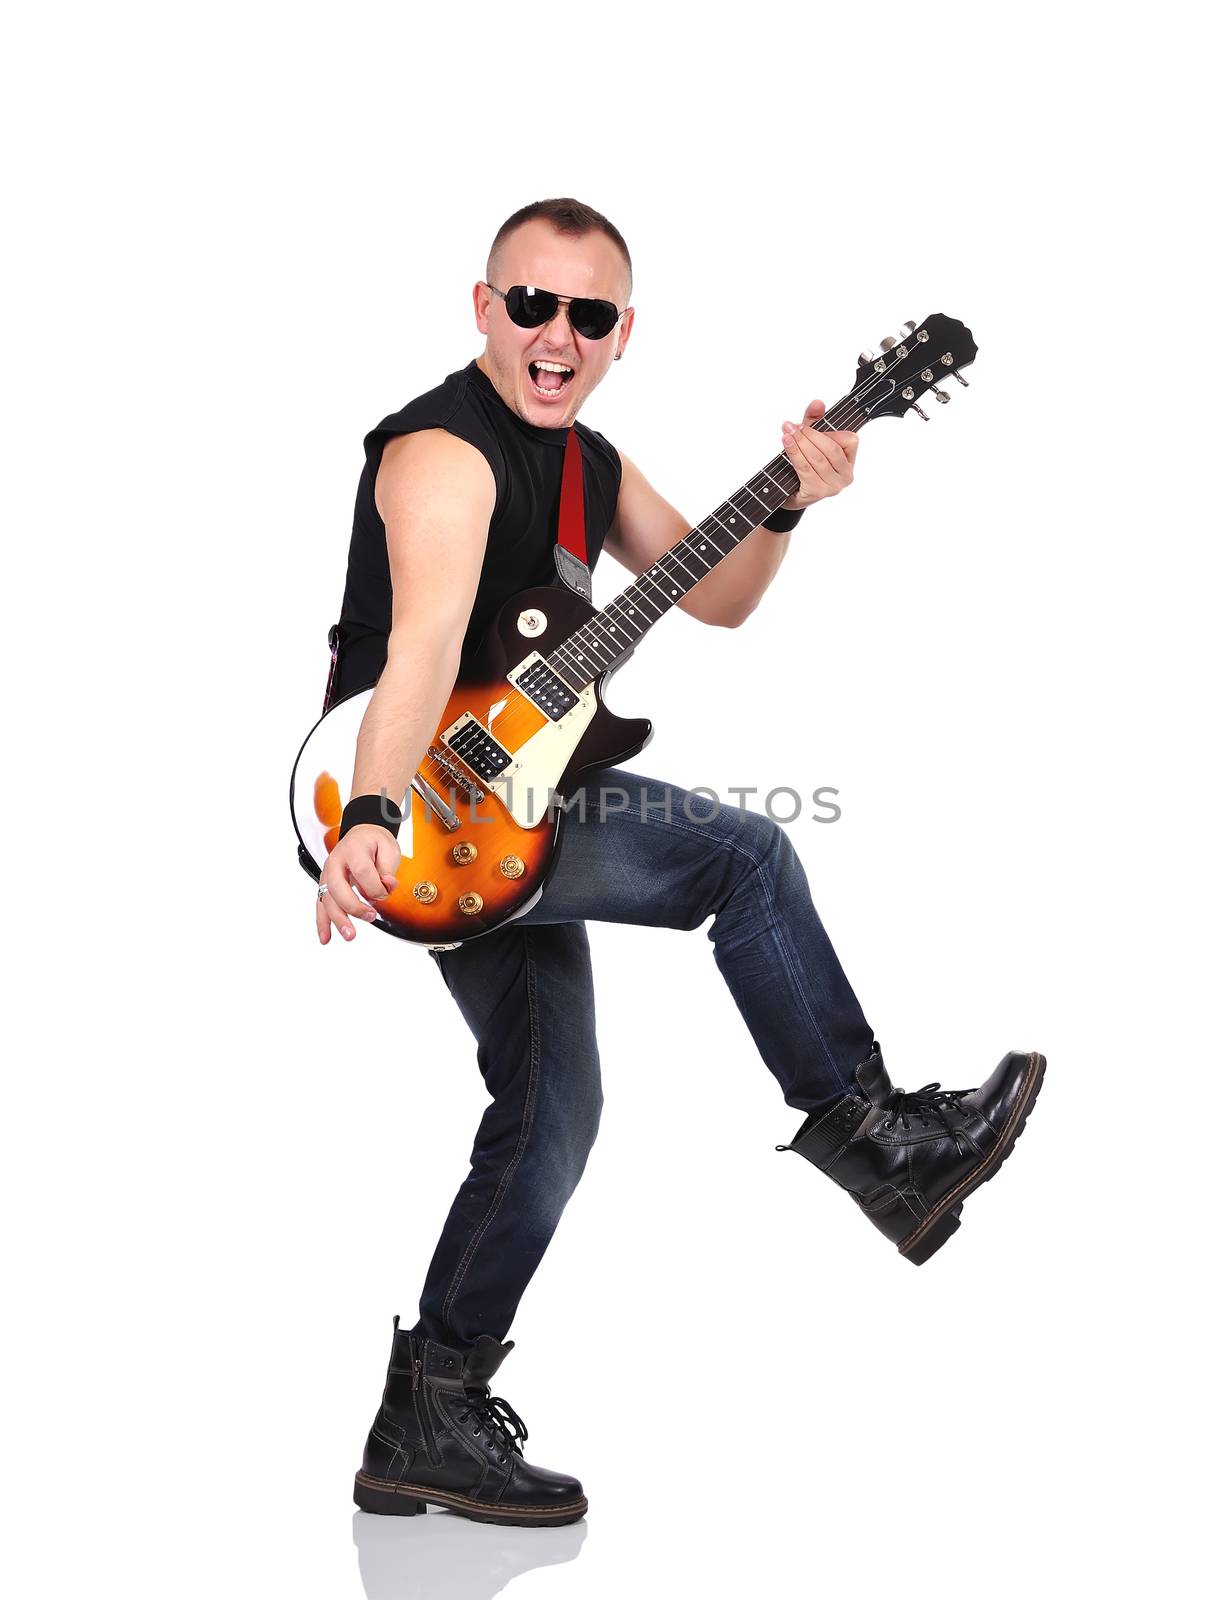 rock musician by vetkit